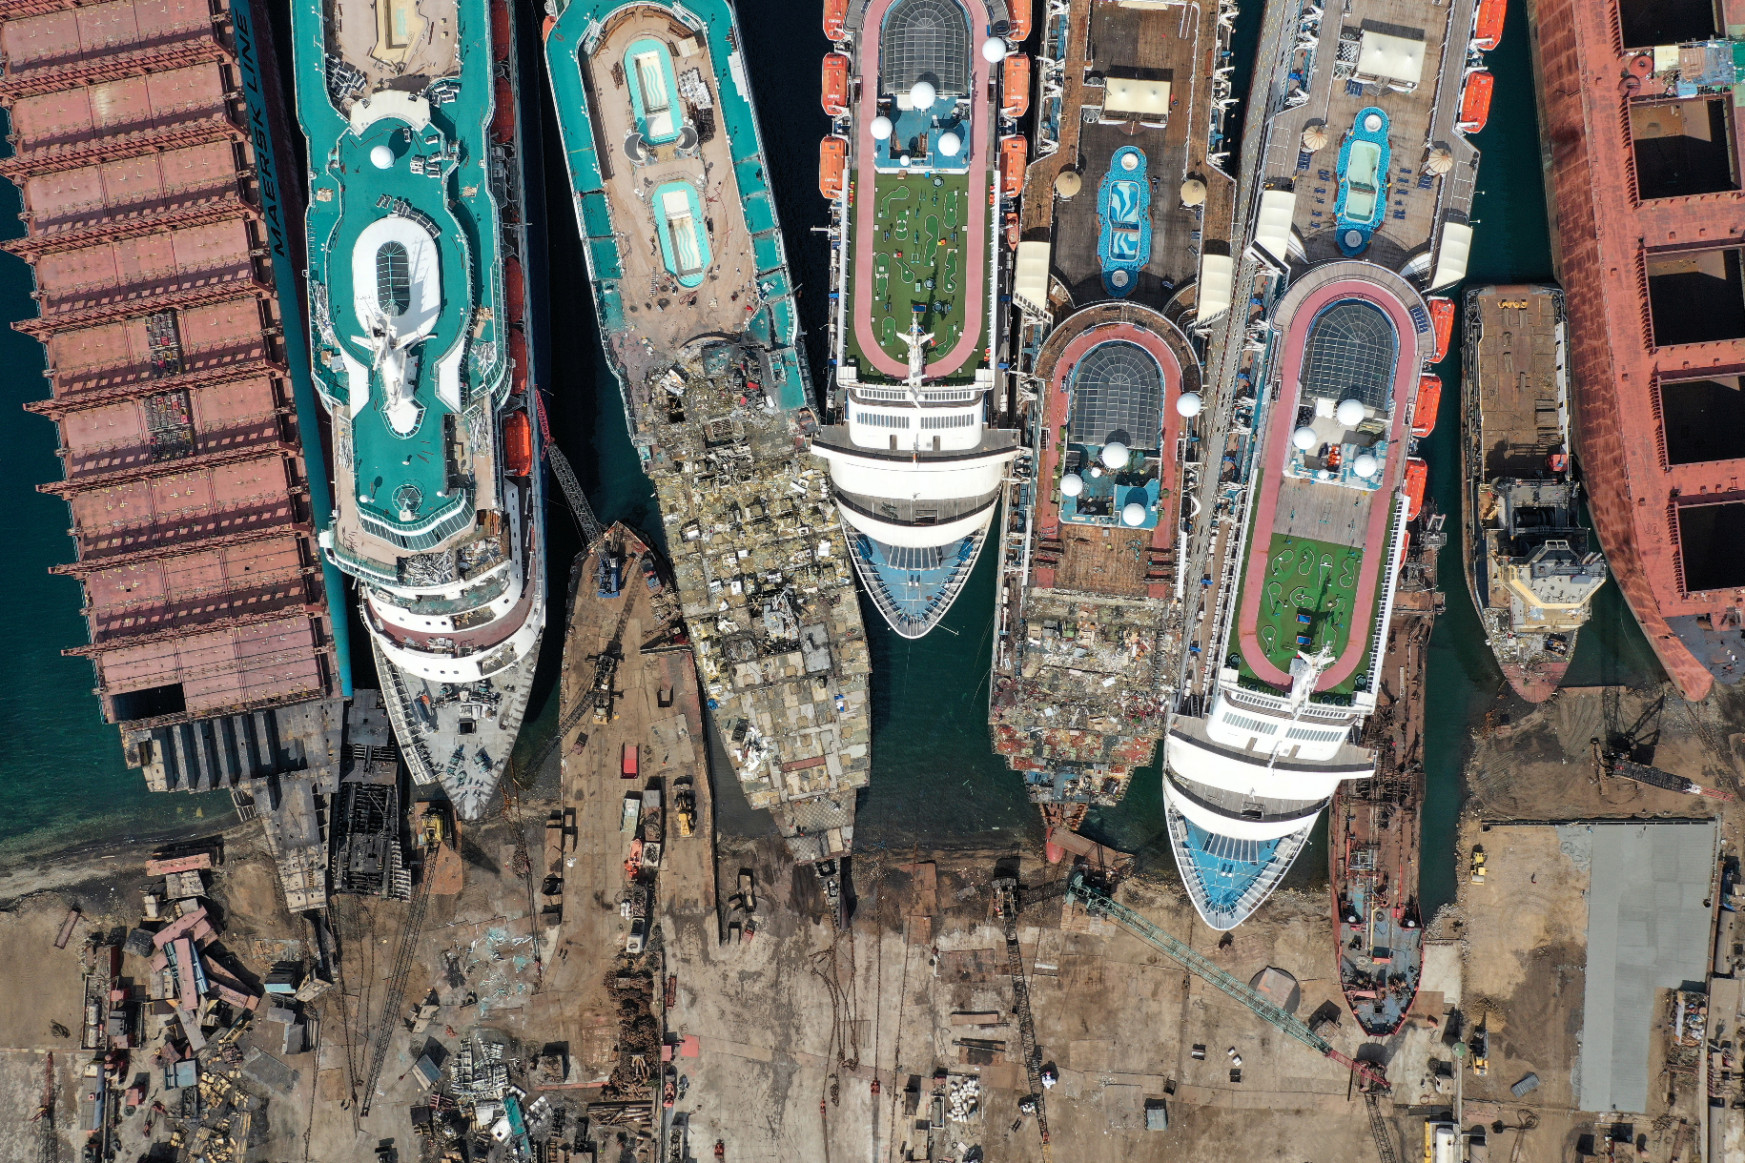 A világ egyik legveszélyesebb szakmája rejlik az elbontásra ítélt óceánjárók fotója mögött